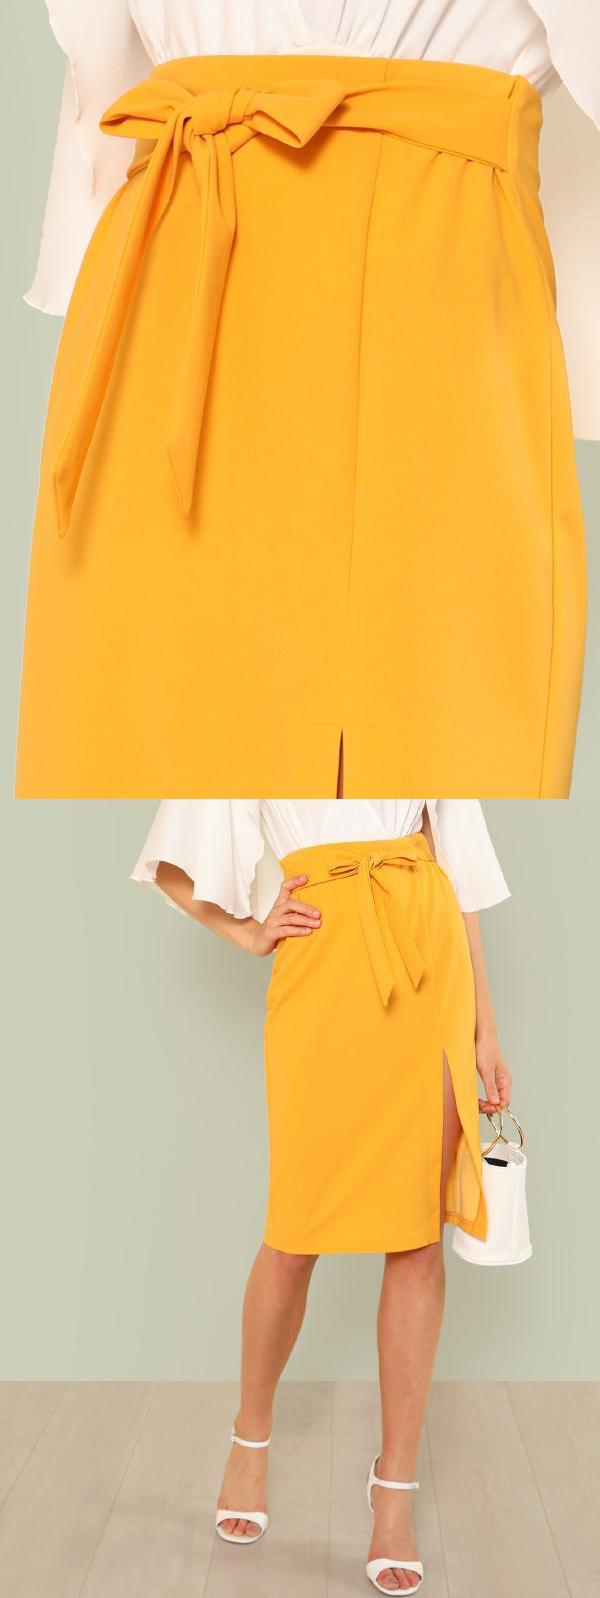 Summer Split Pencil Skirt for Lady 4